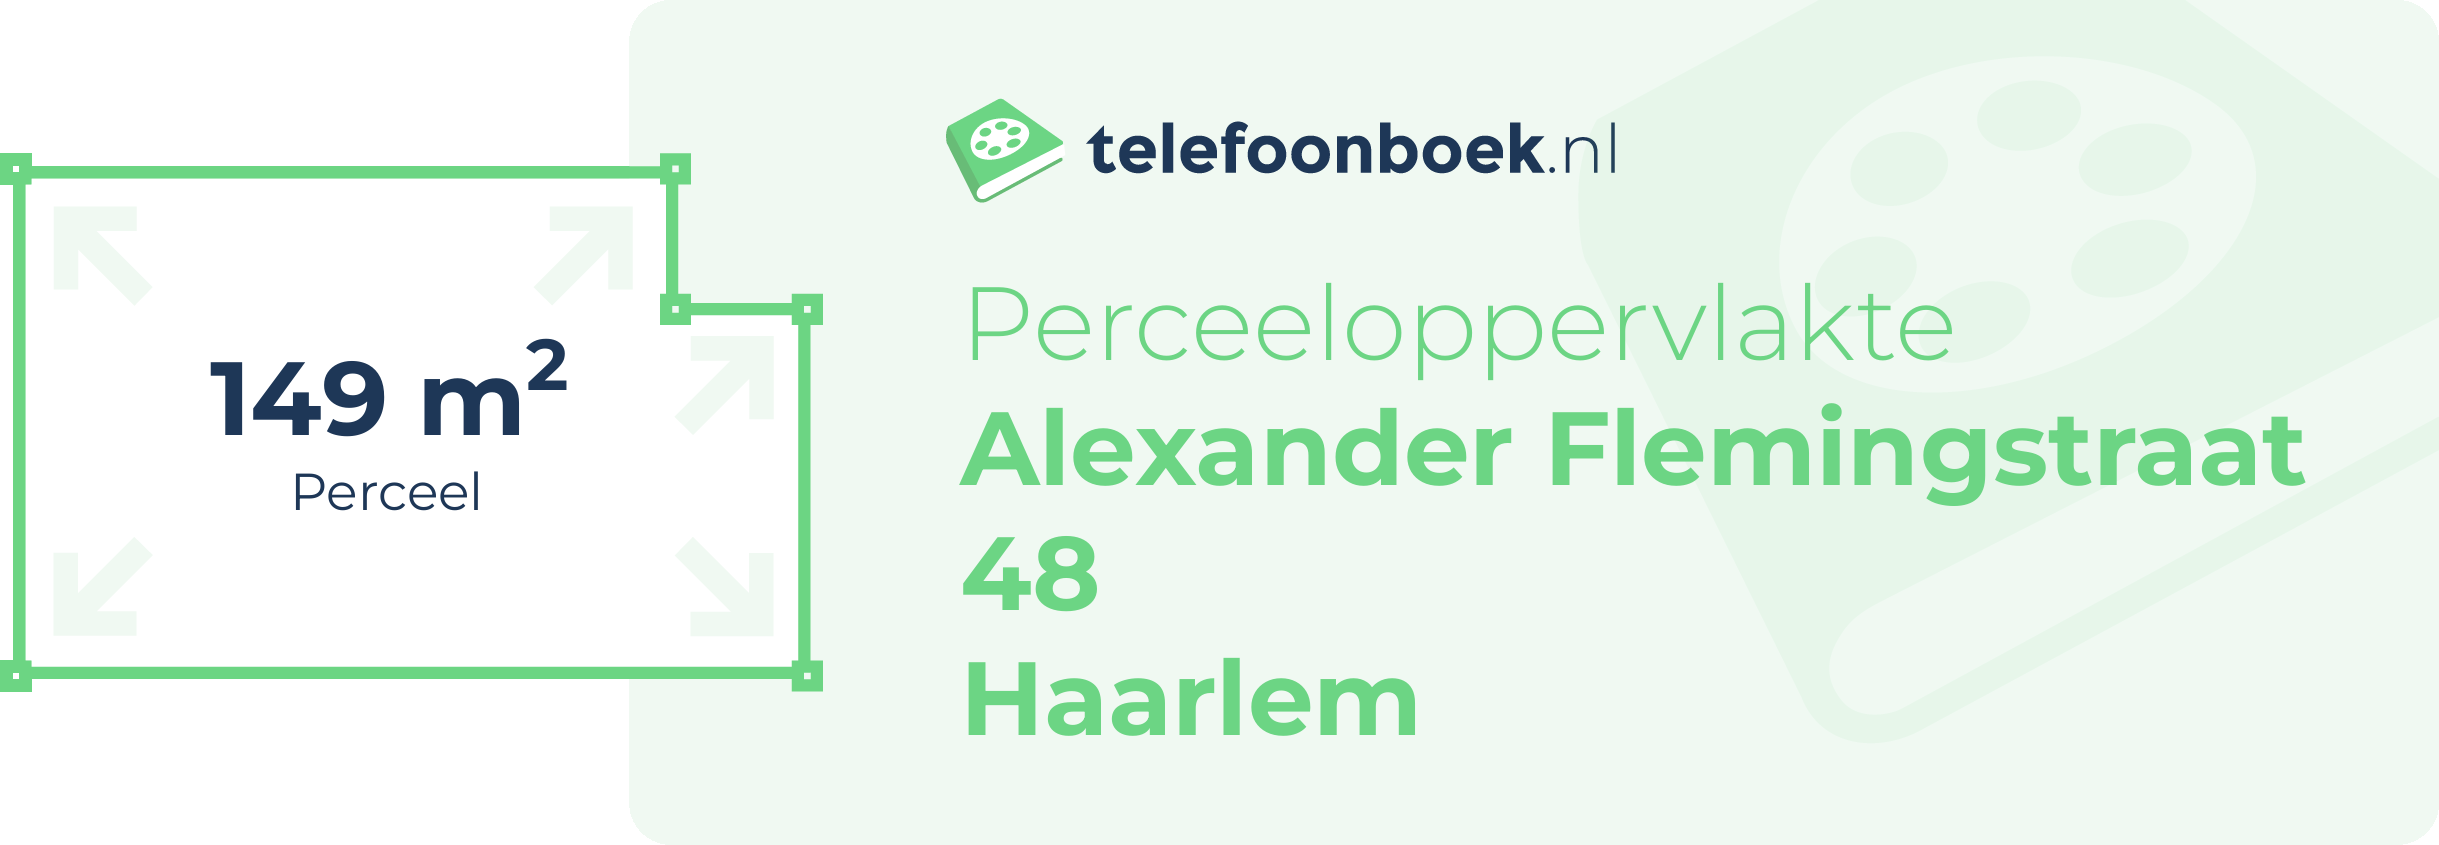 Perceeloppervlakte Alexander Flemingstraat 48 Haarlem